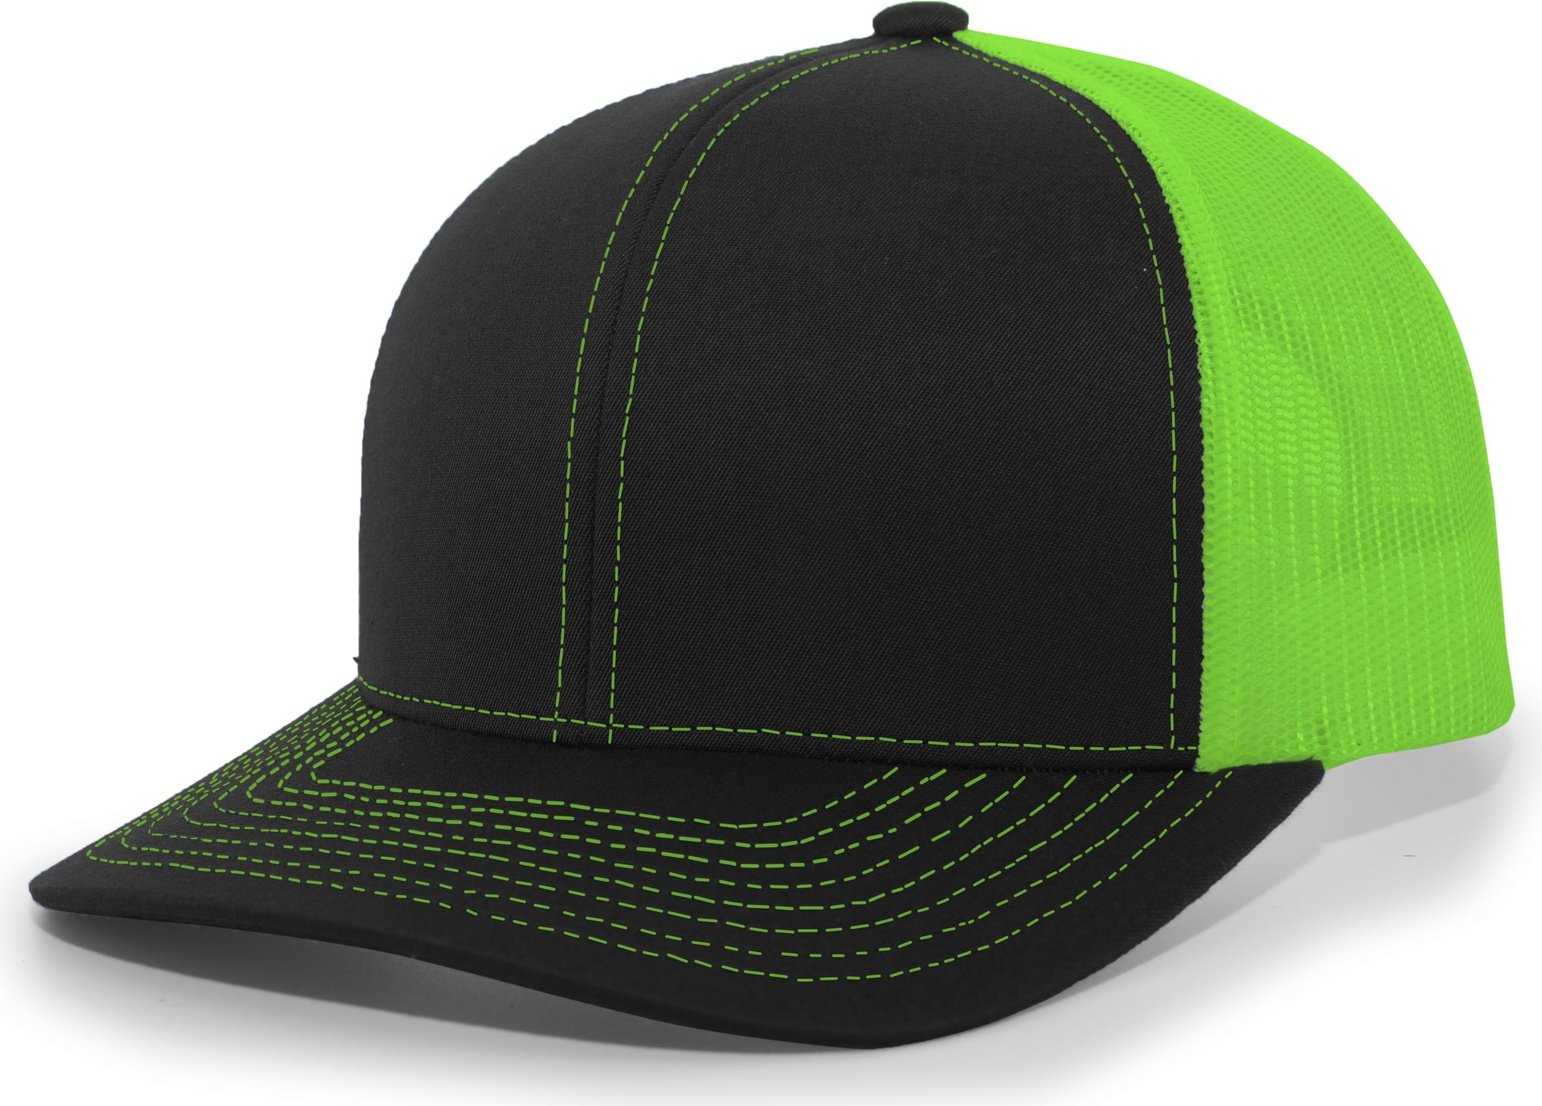 Pacific Headwear 104C Trucker Snapback Cap - Black Neon Green - HIT a Double